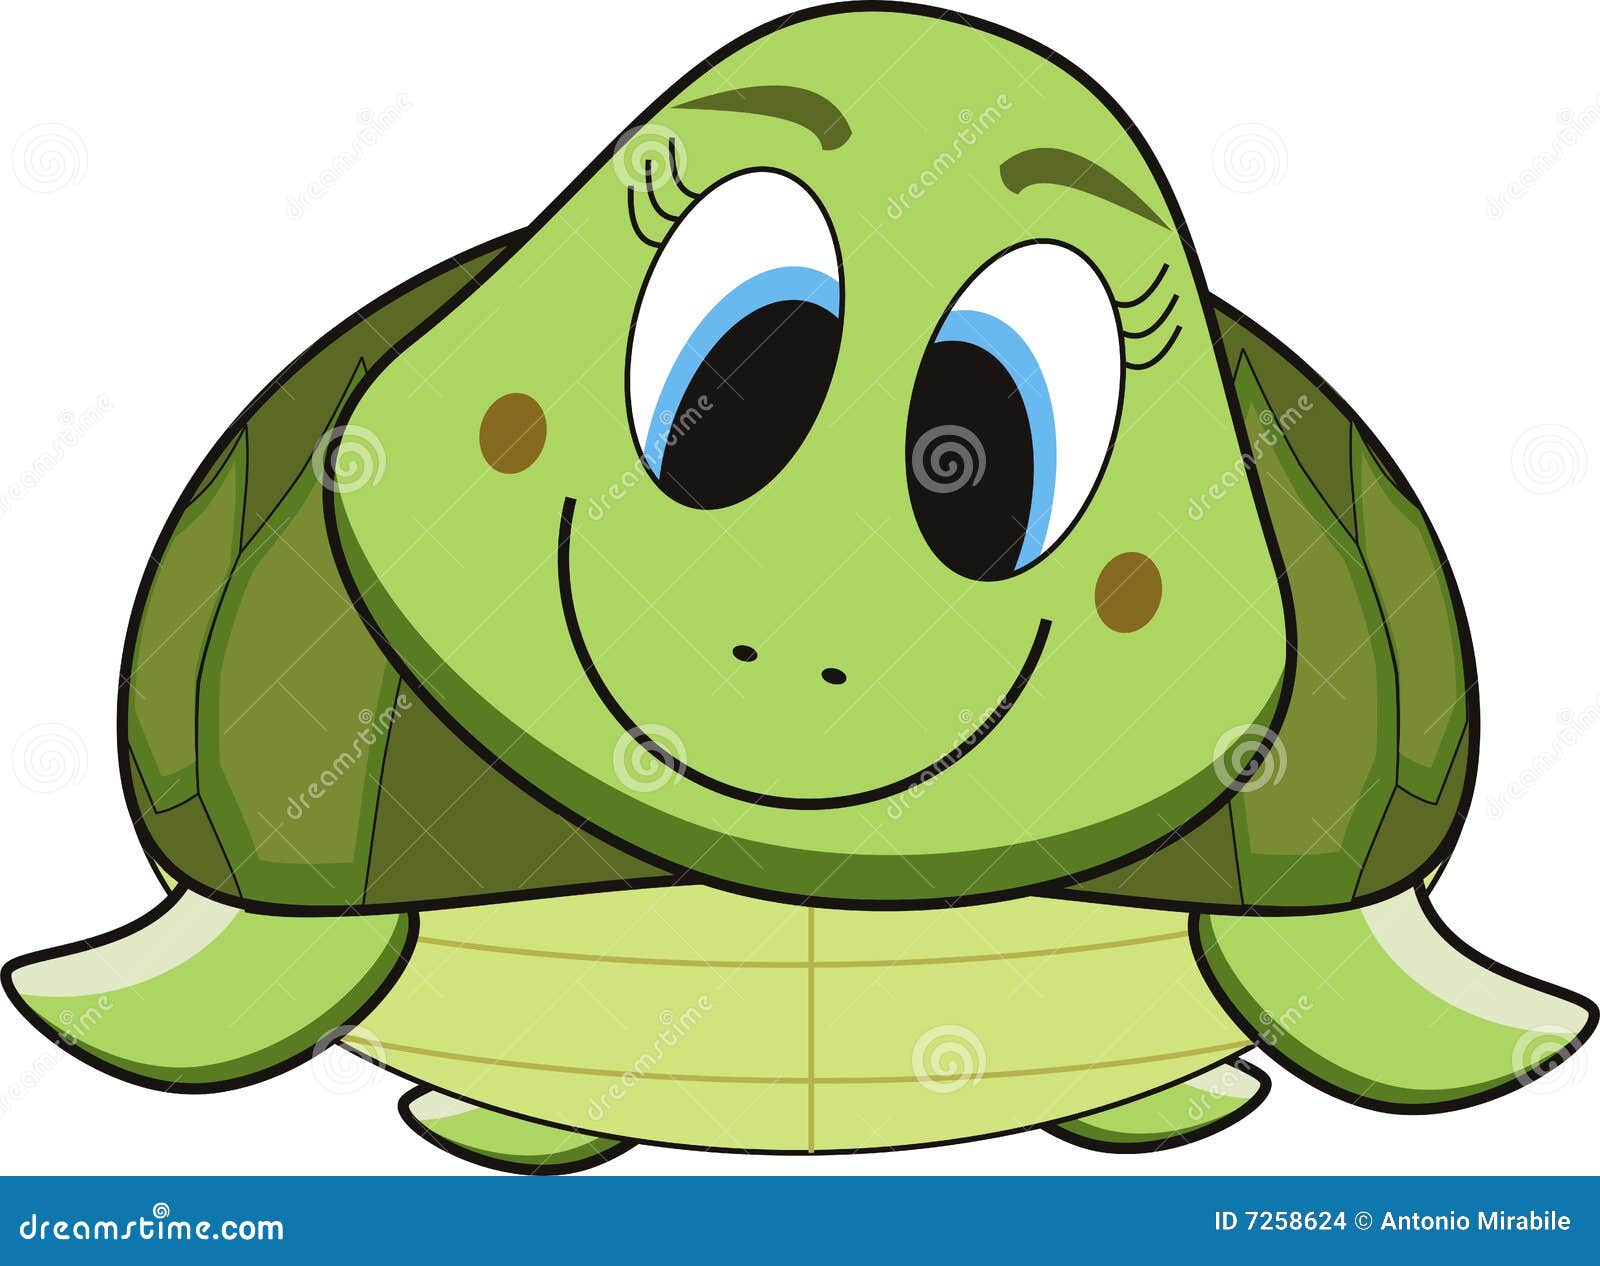 Turtle cartoon stock vector. Illustration of tortoise - 7258624